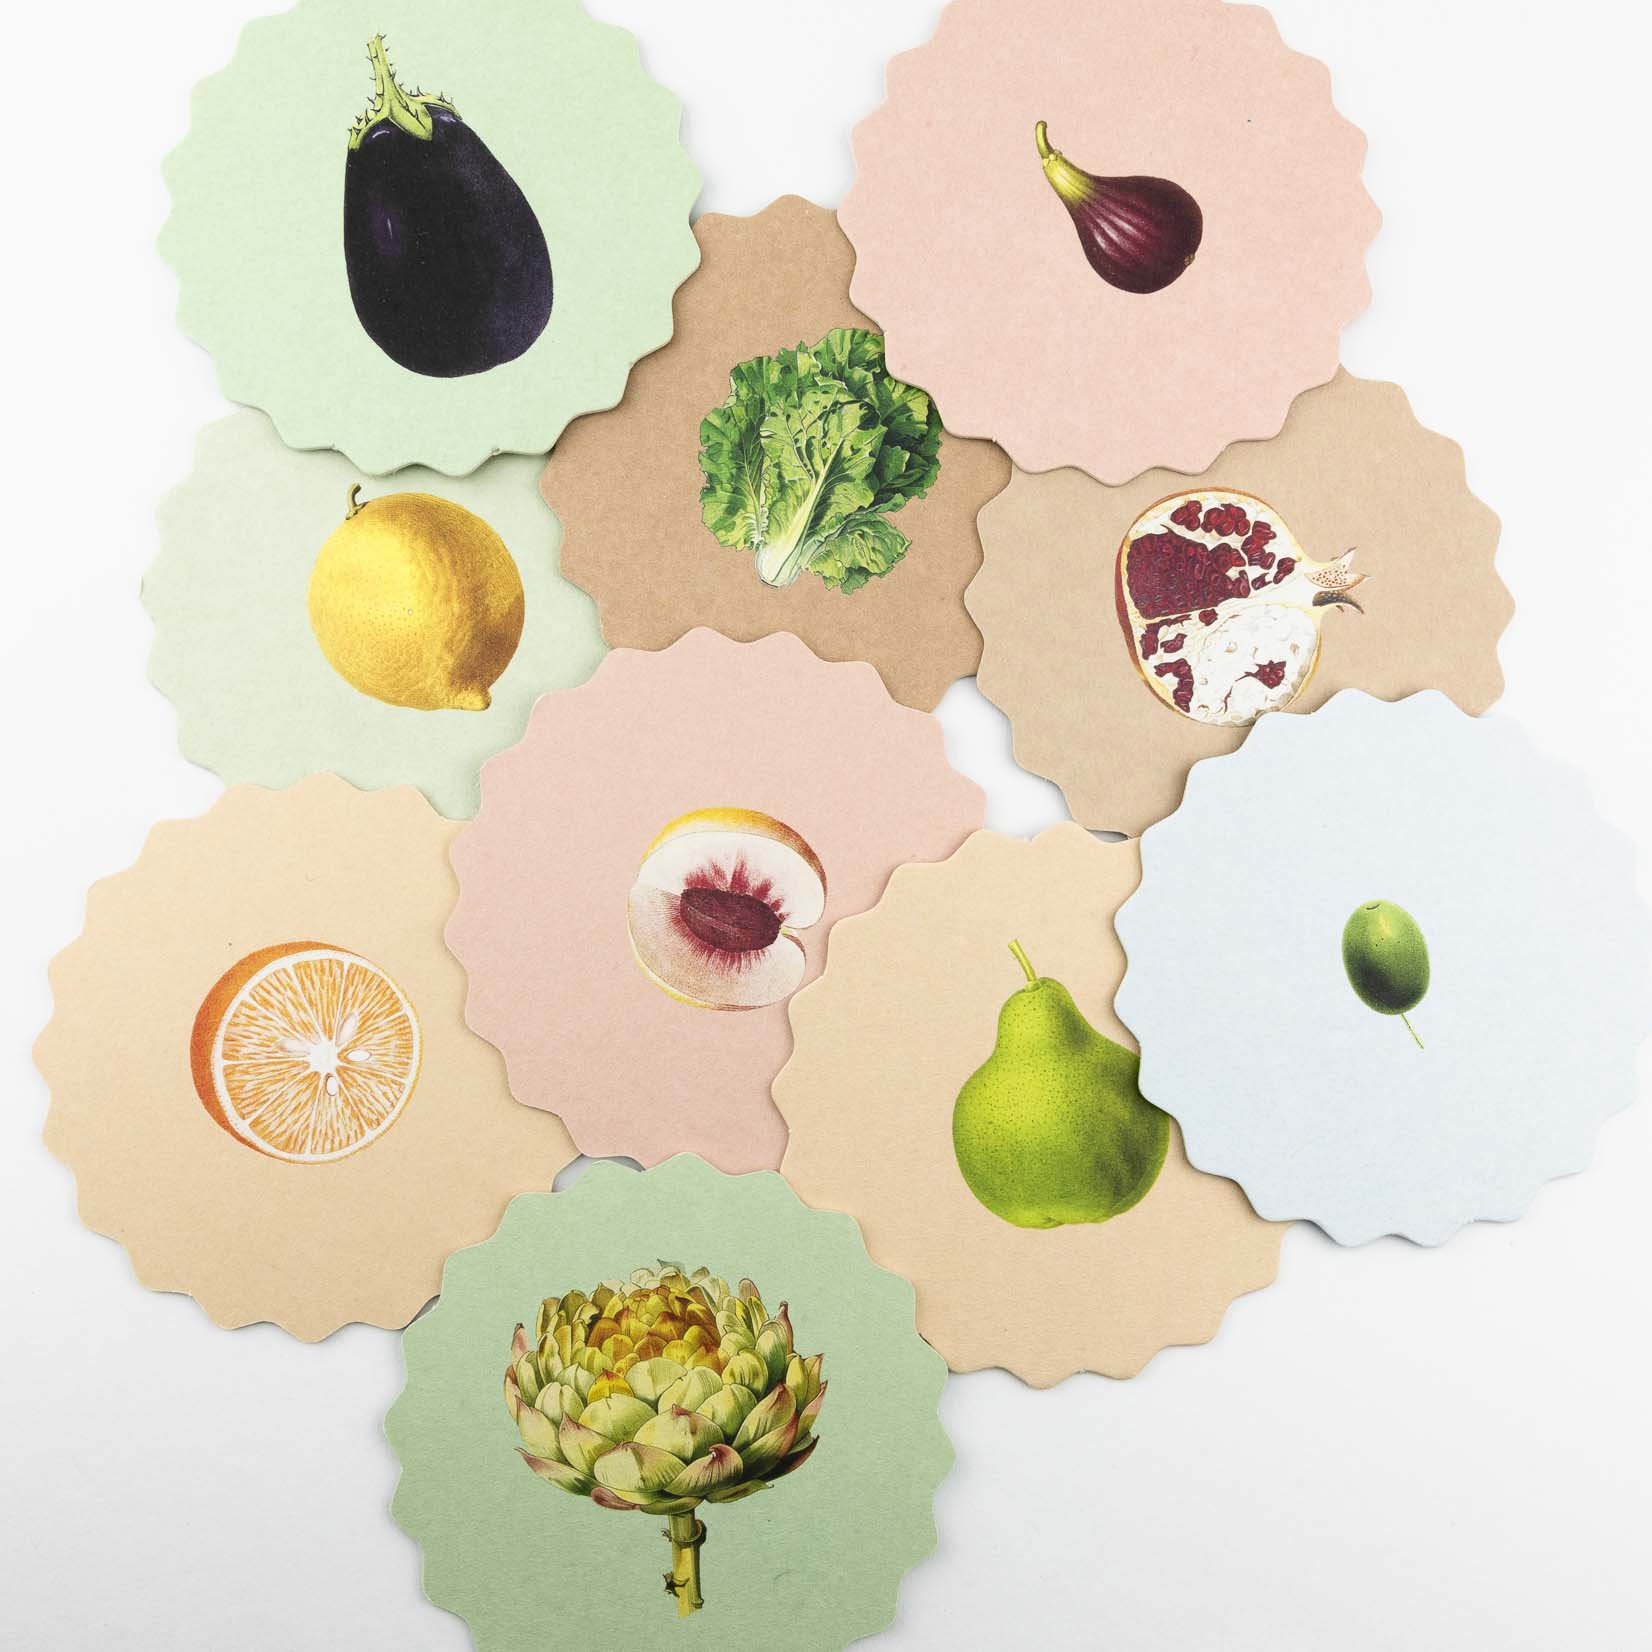 30x40 Untersetzer Ablage Coaster mit verschiedenen Gemüse Obst aus Papier beidseitig bedruckt